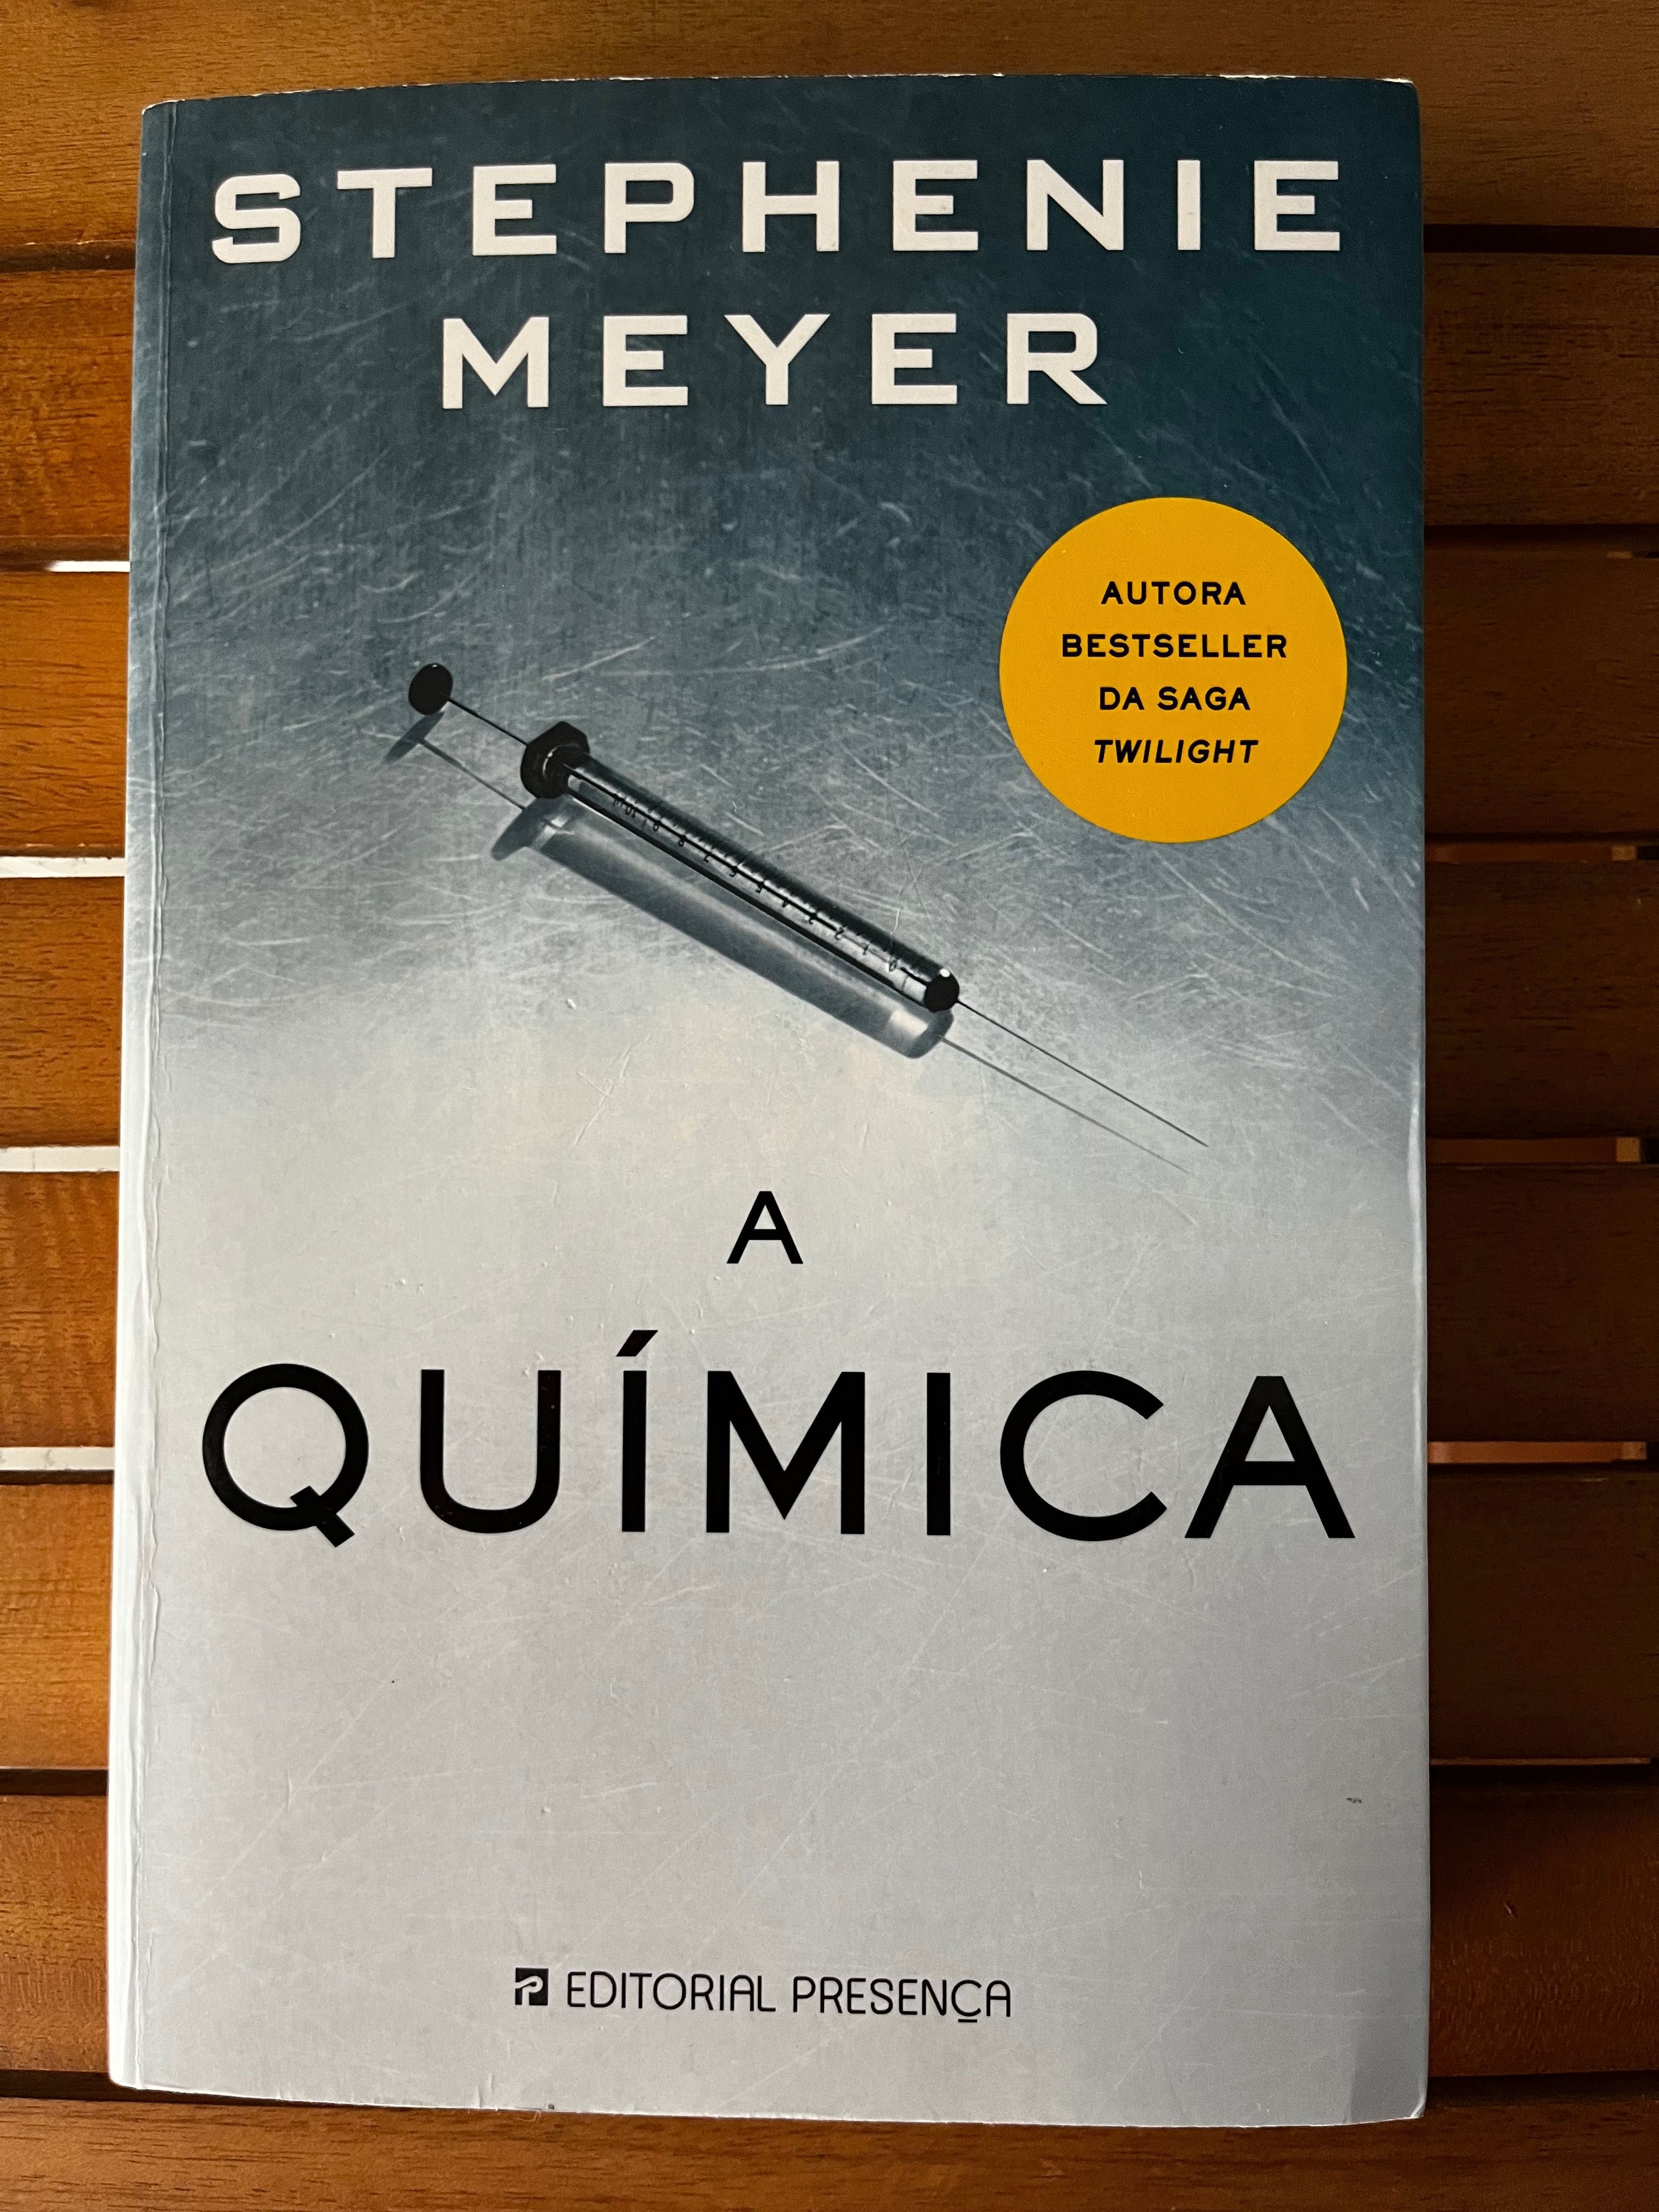 Livro "A Quimica" de Stephenie Meyer